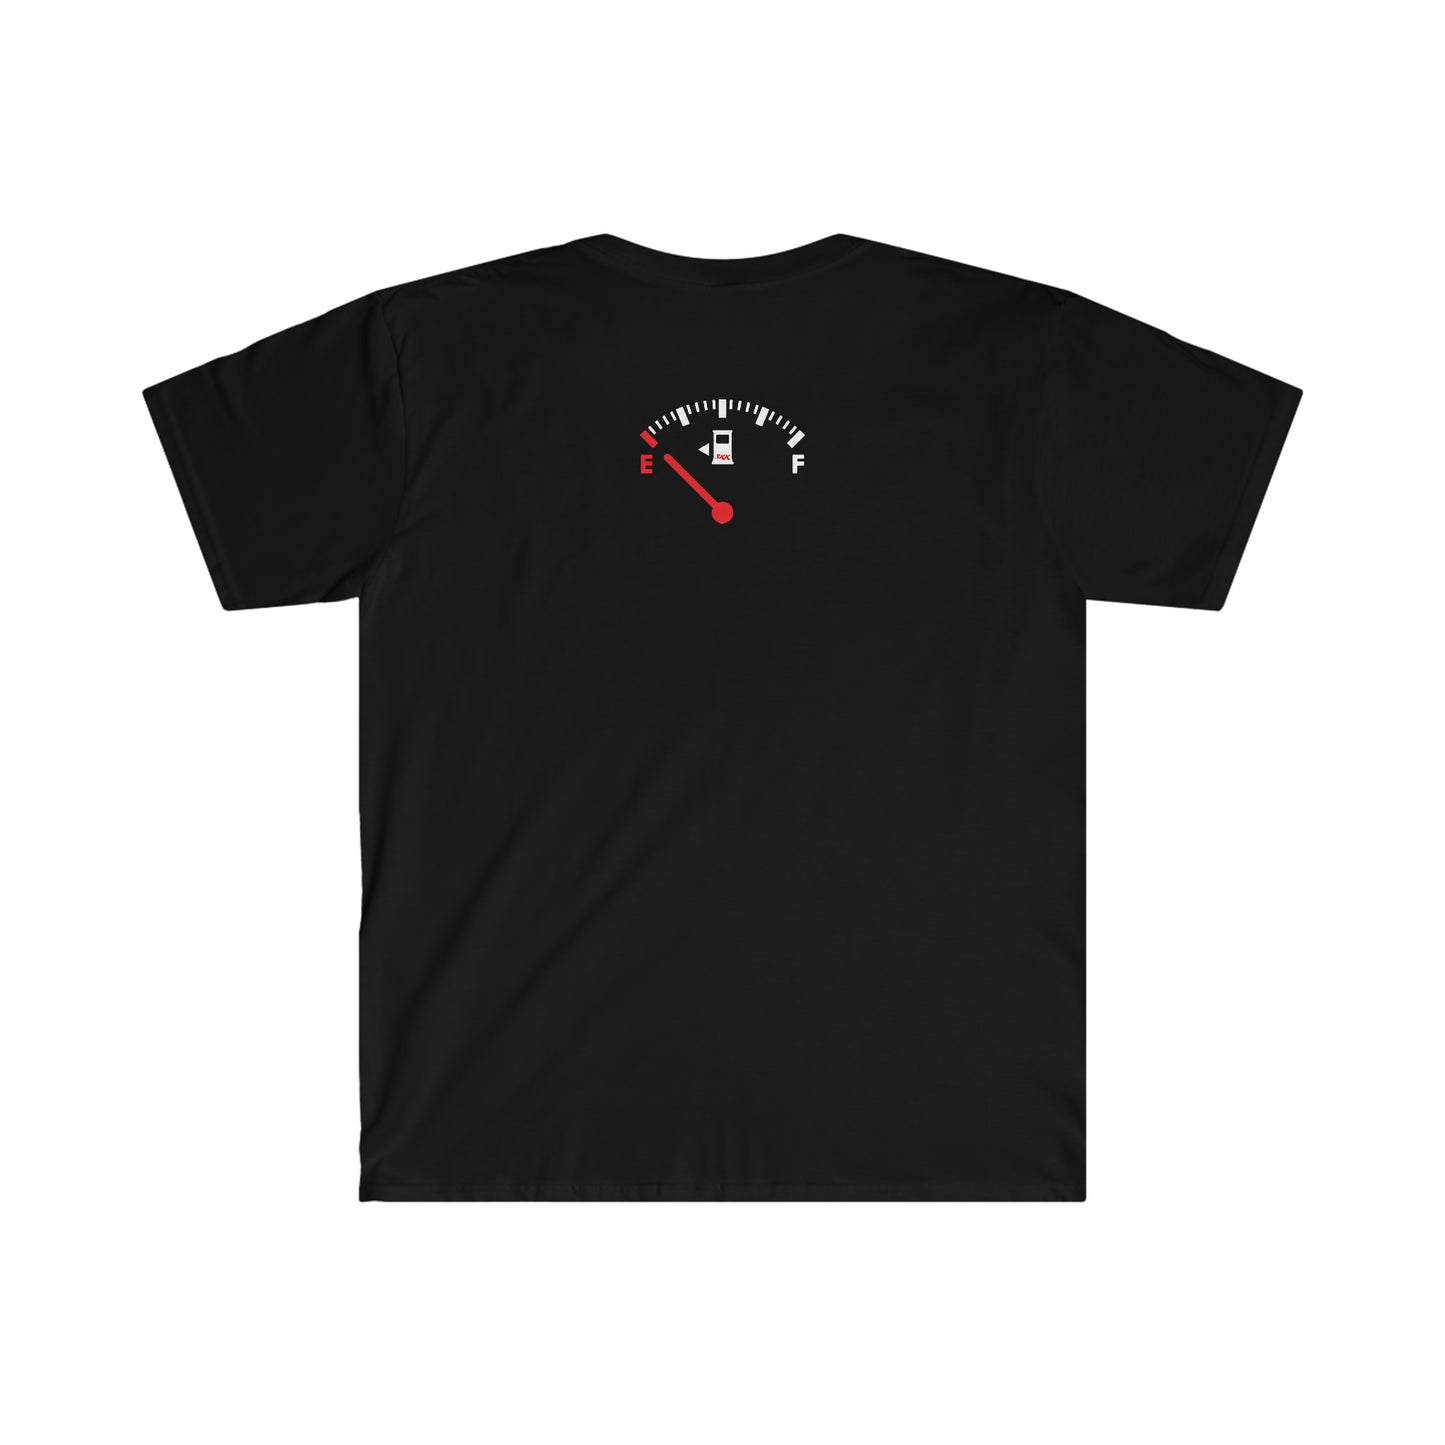 ZERO TO GIVE - RADIO EDIT Unisex Softstyle T-Shirt